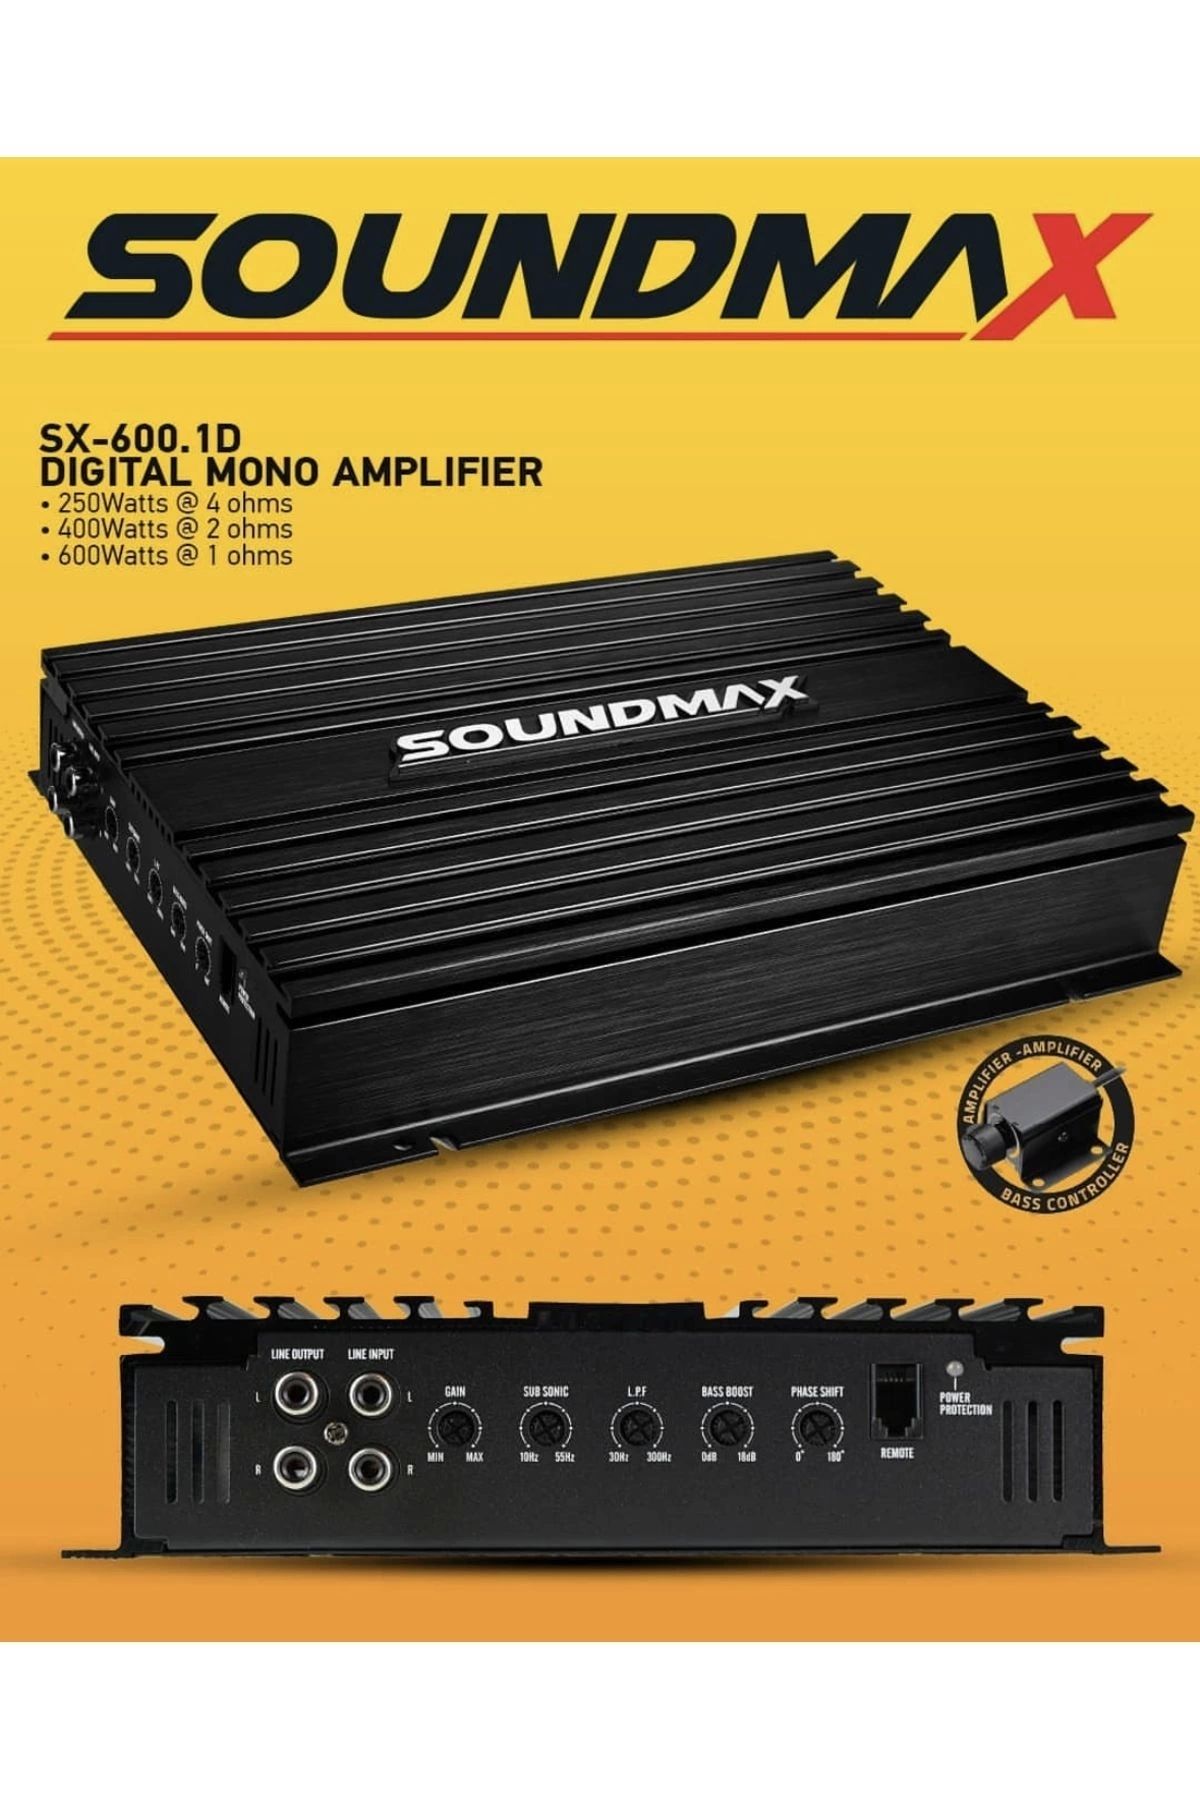 Reiss Soundmax Mono Amfi - Soundmax SX-600.1D Bass Anfisi - 600RMS